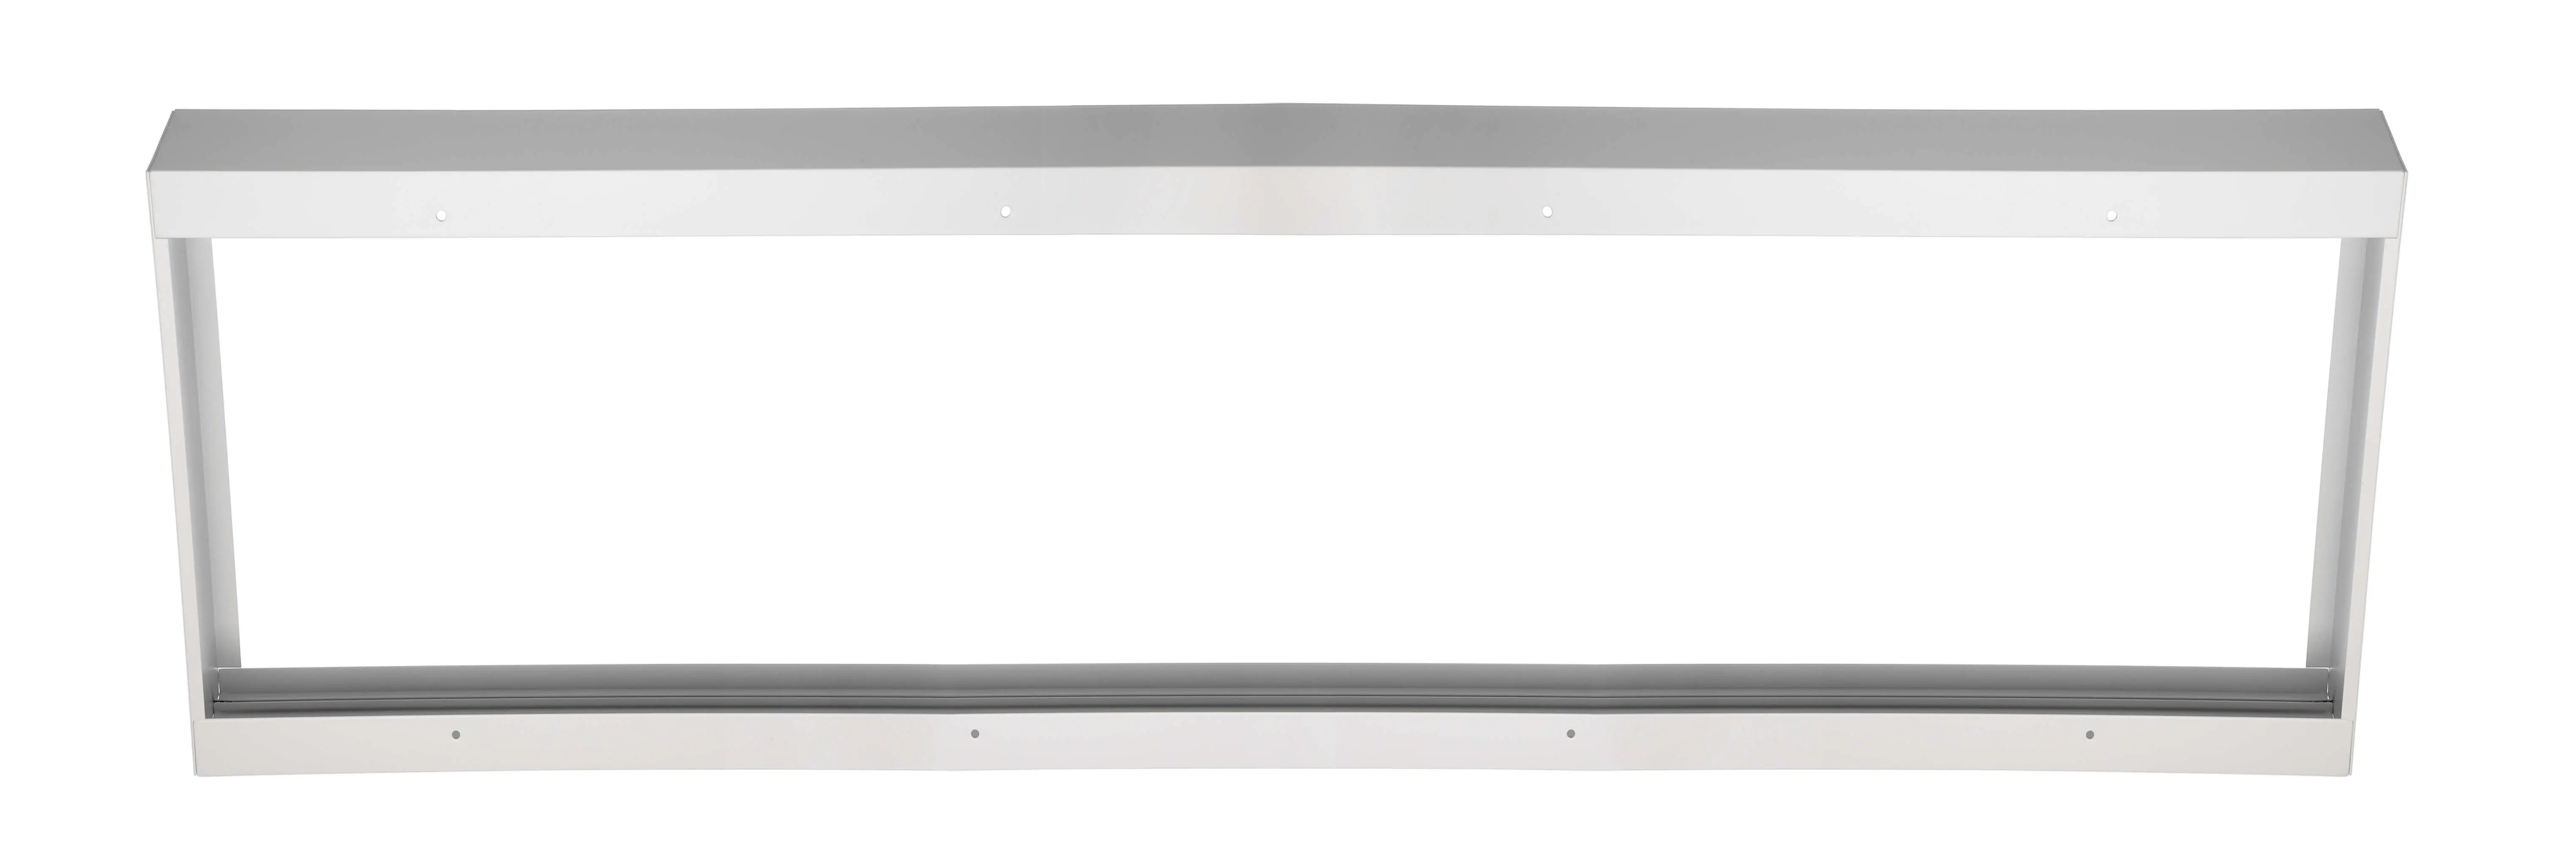 Aufbaurahmen weiß für LED-Panels 119.5x59.5cm